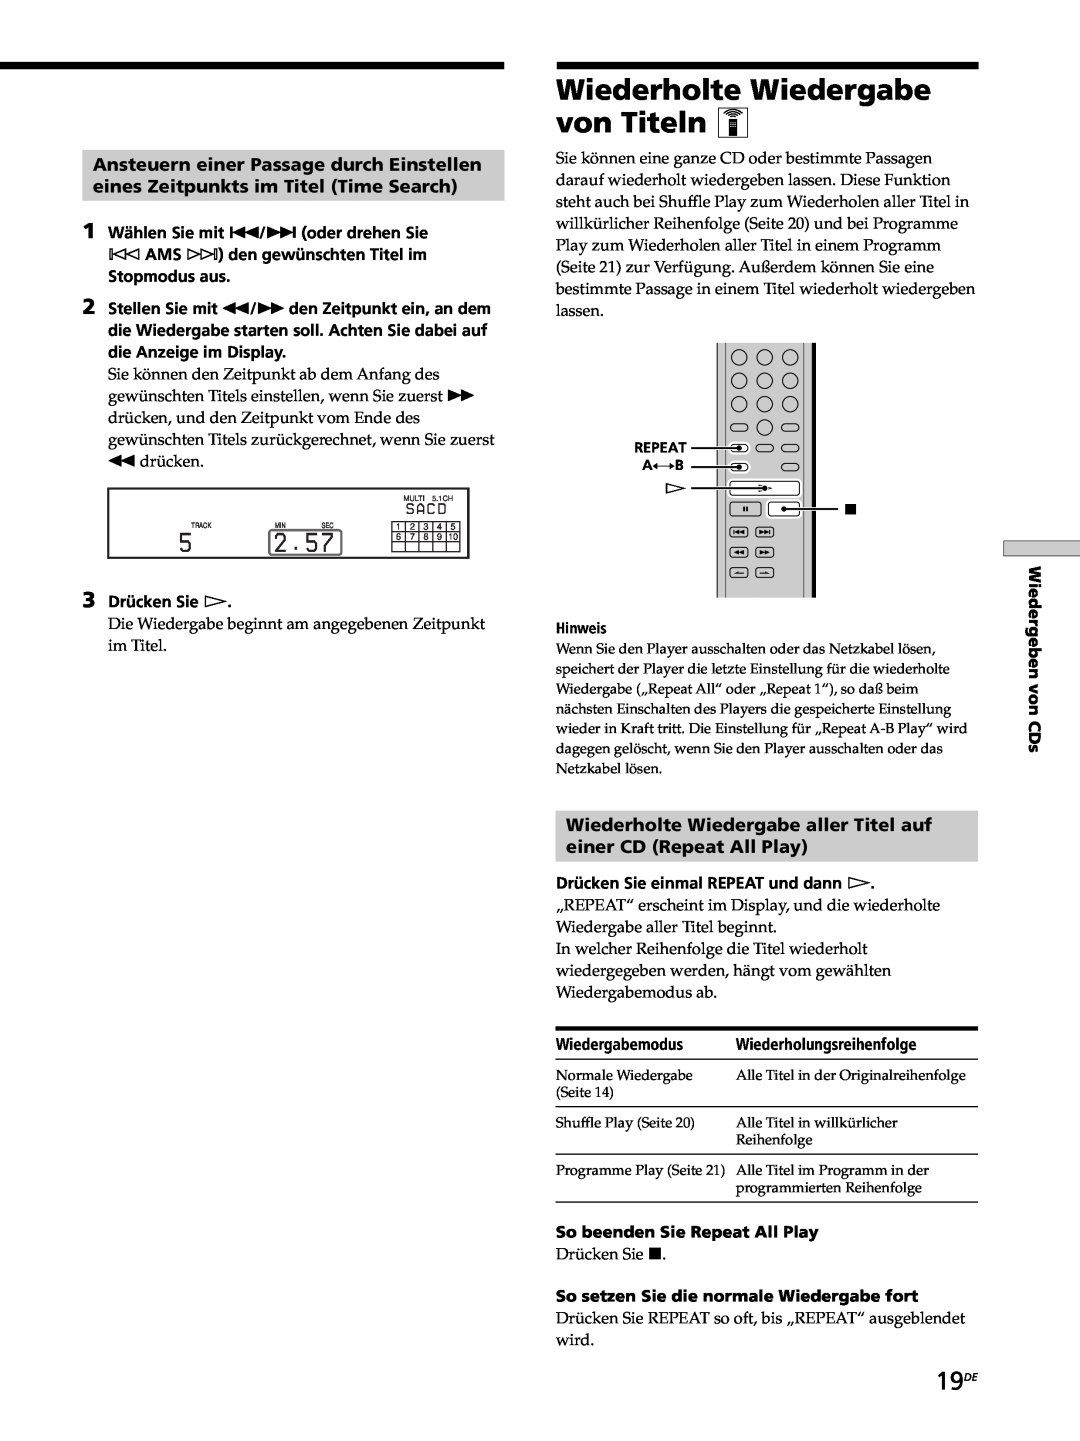 Sony SCD-XB770 operating instructions Wiederholte Wiedergabe von Titeln Z, 19DE, Ansteuern einer Passage durch Einstellen 